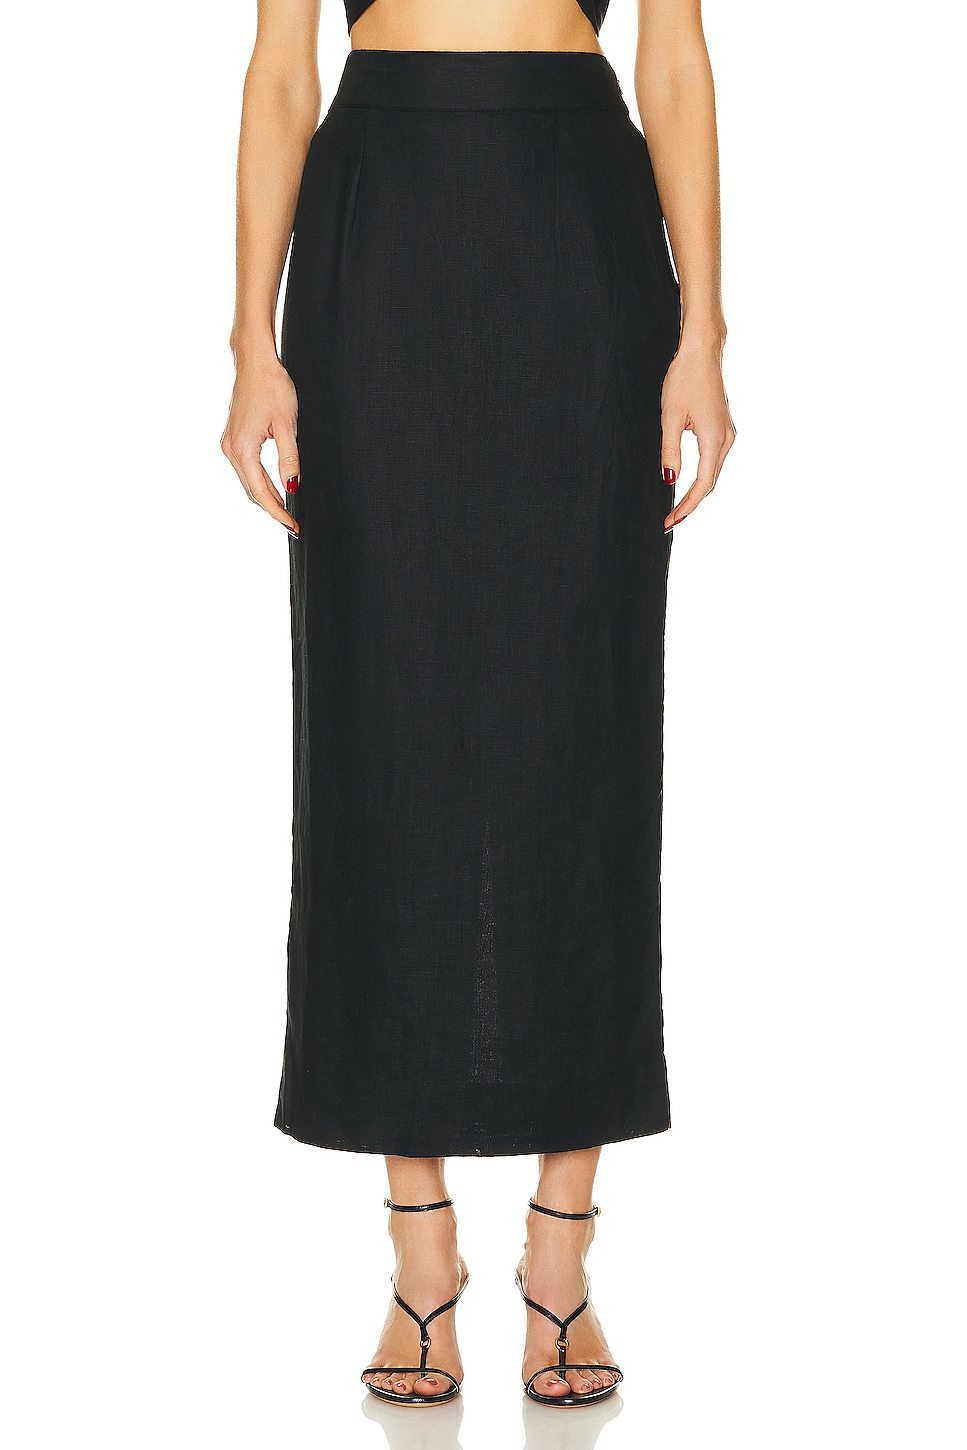 Designer Skirts for Women | Knee Length, Maxi, Mini